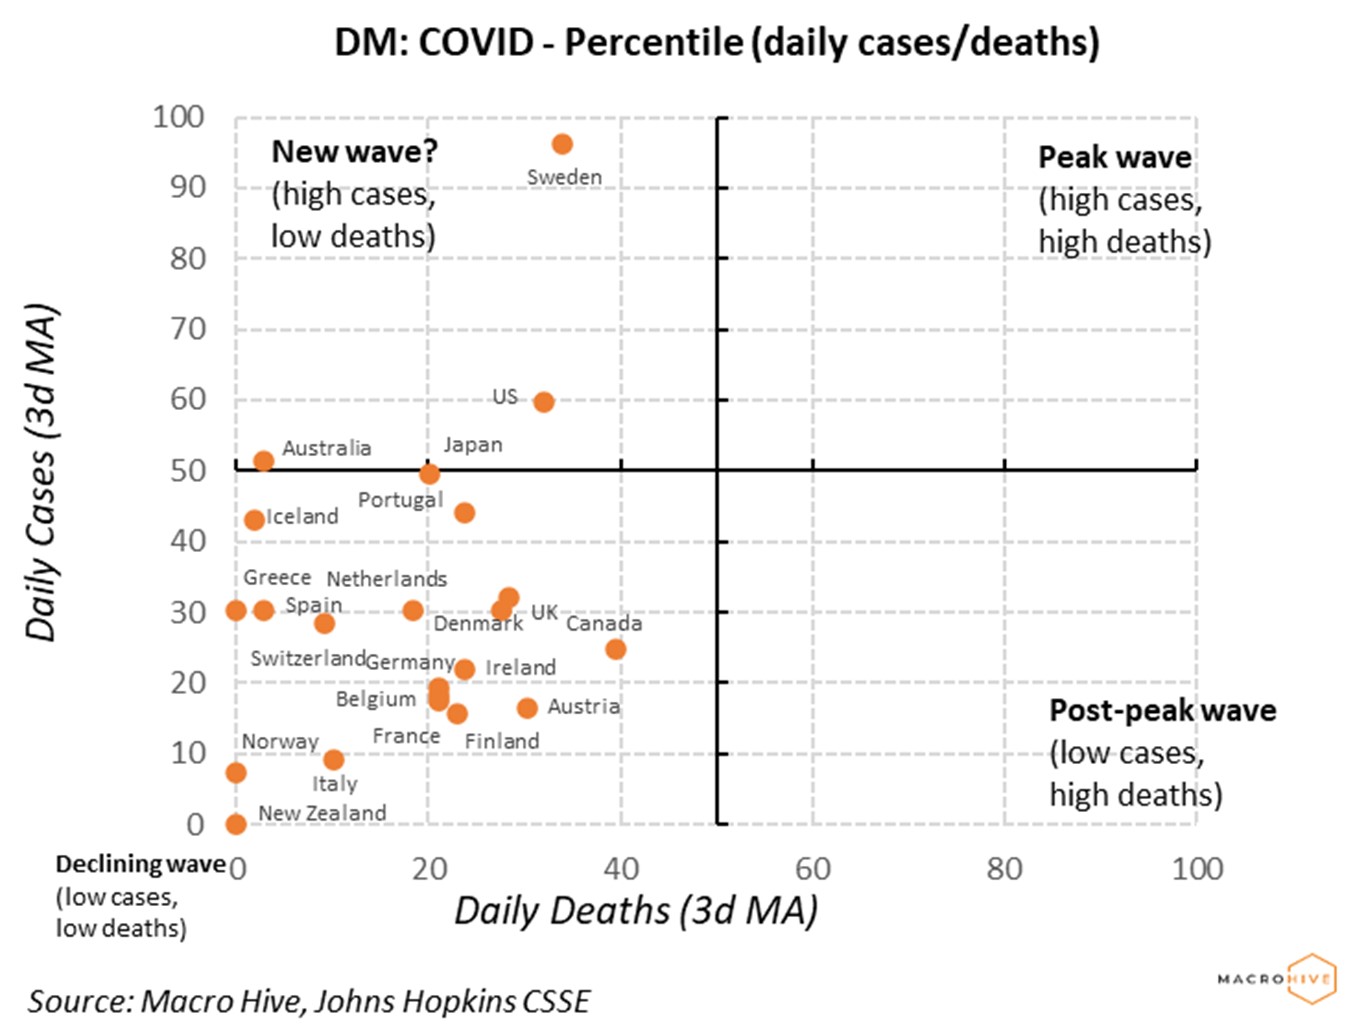 DM COVID Percentile